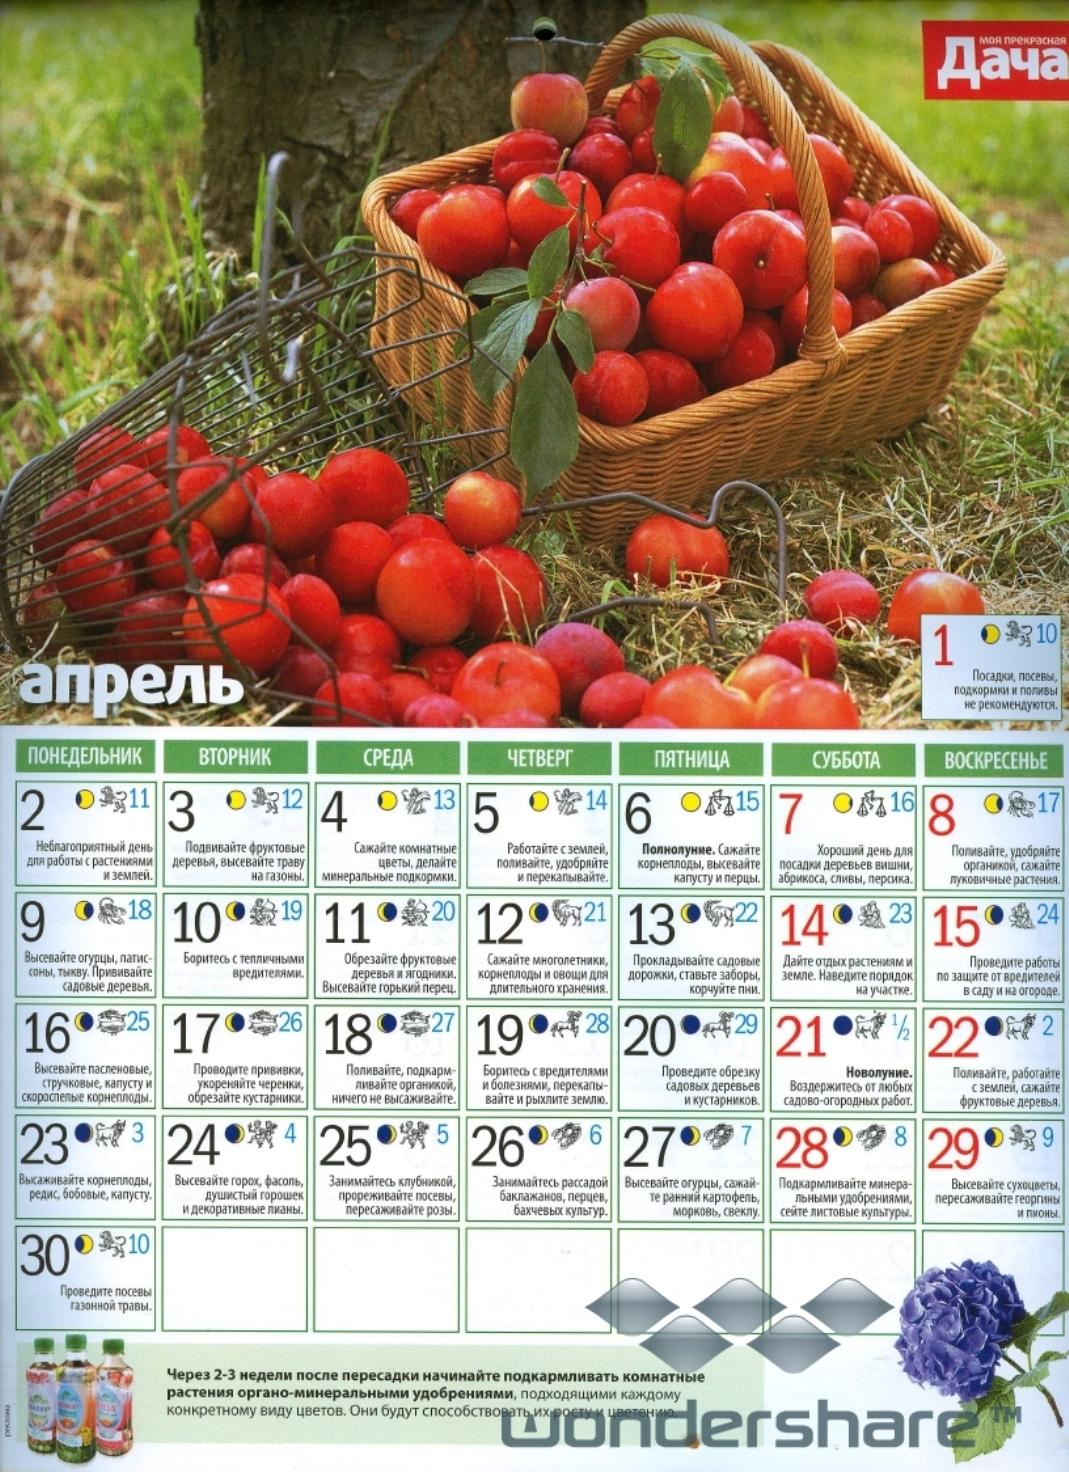 Календарь посадок земляники. Календарь посадки растений. Календарь посадок в саду. Садовый календарь на этот год. Календарь растений садовый.